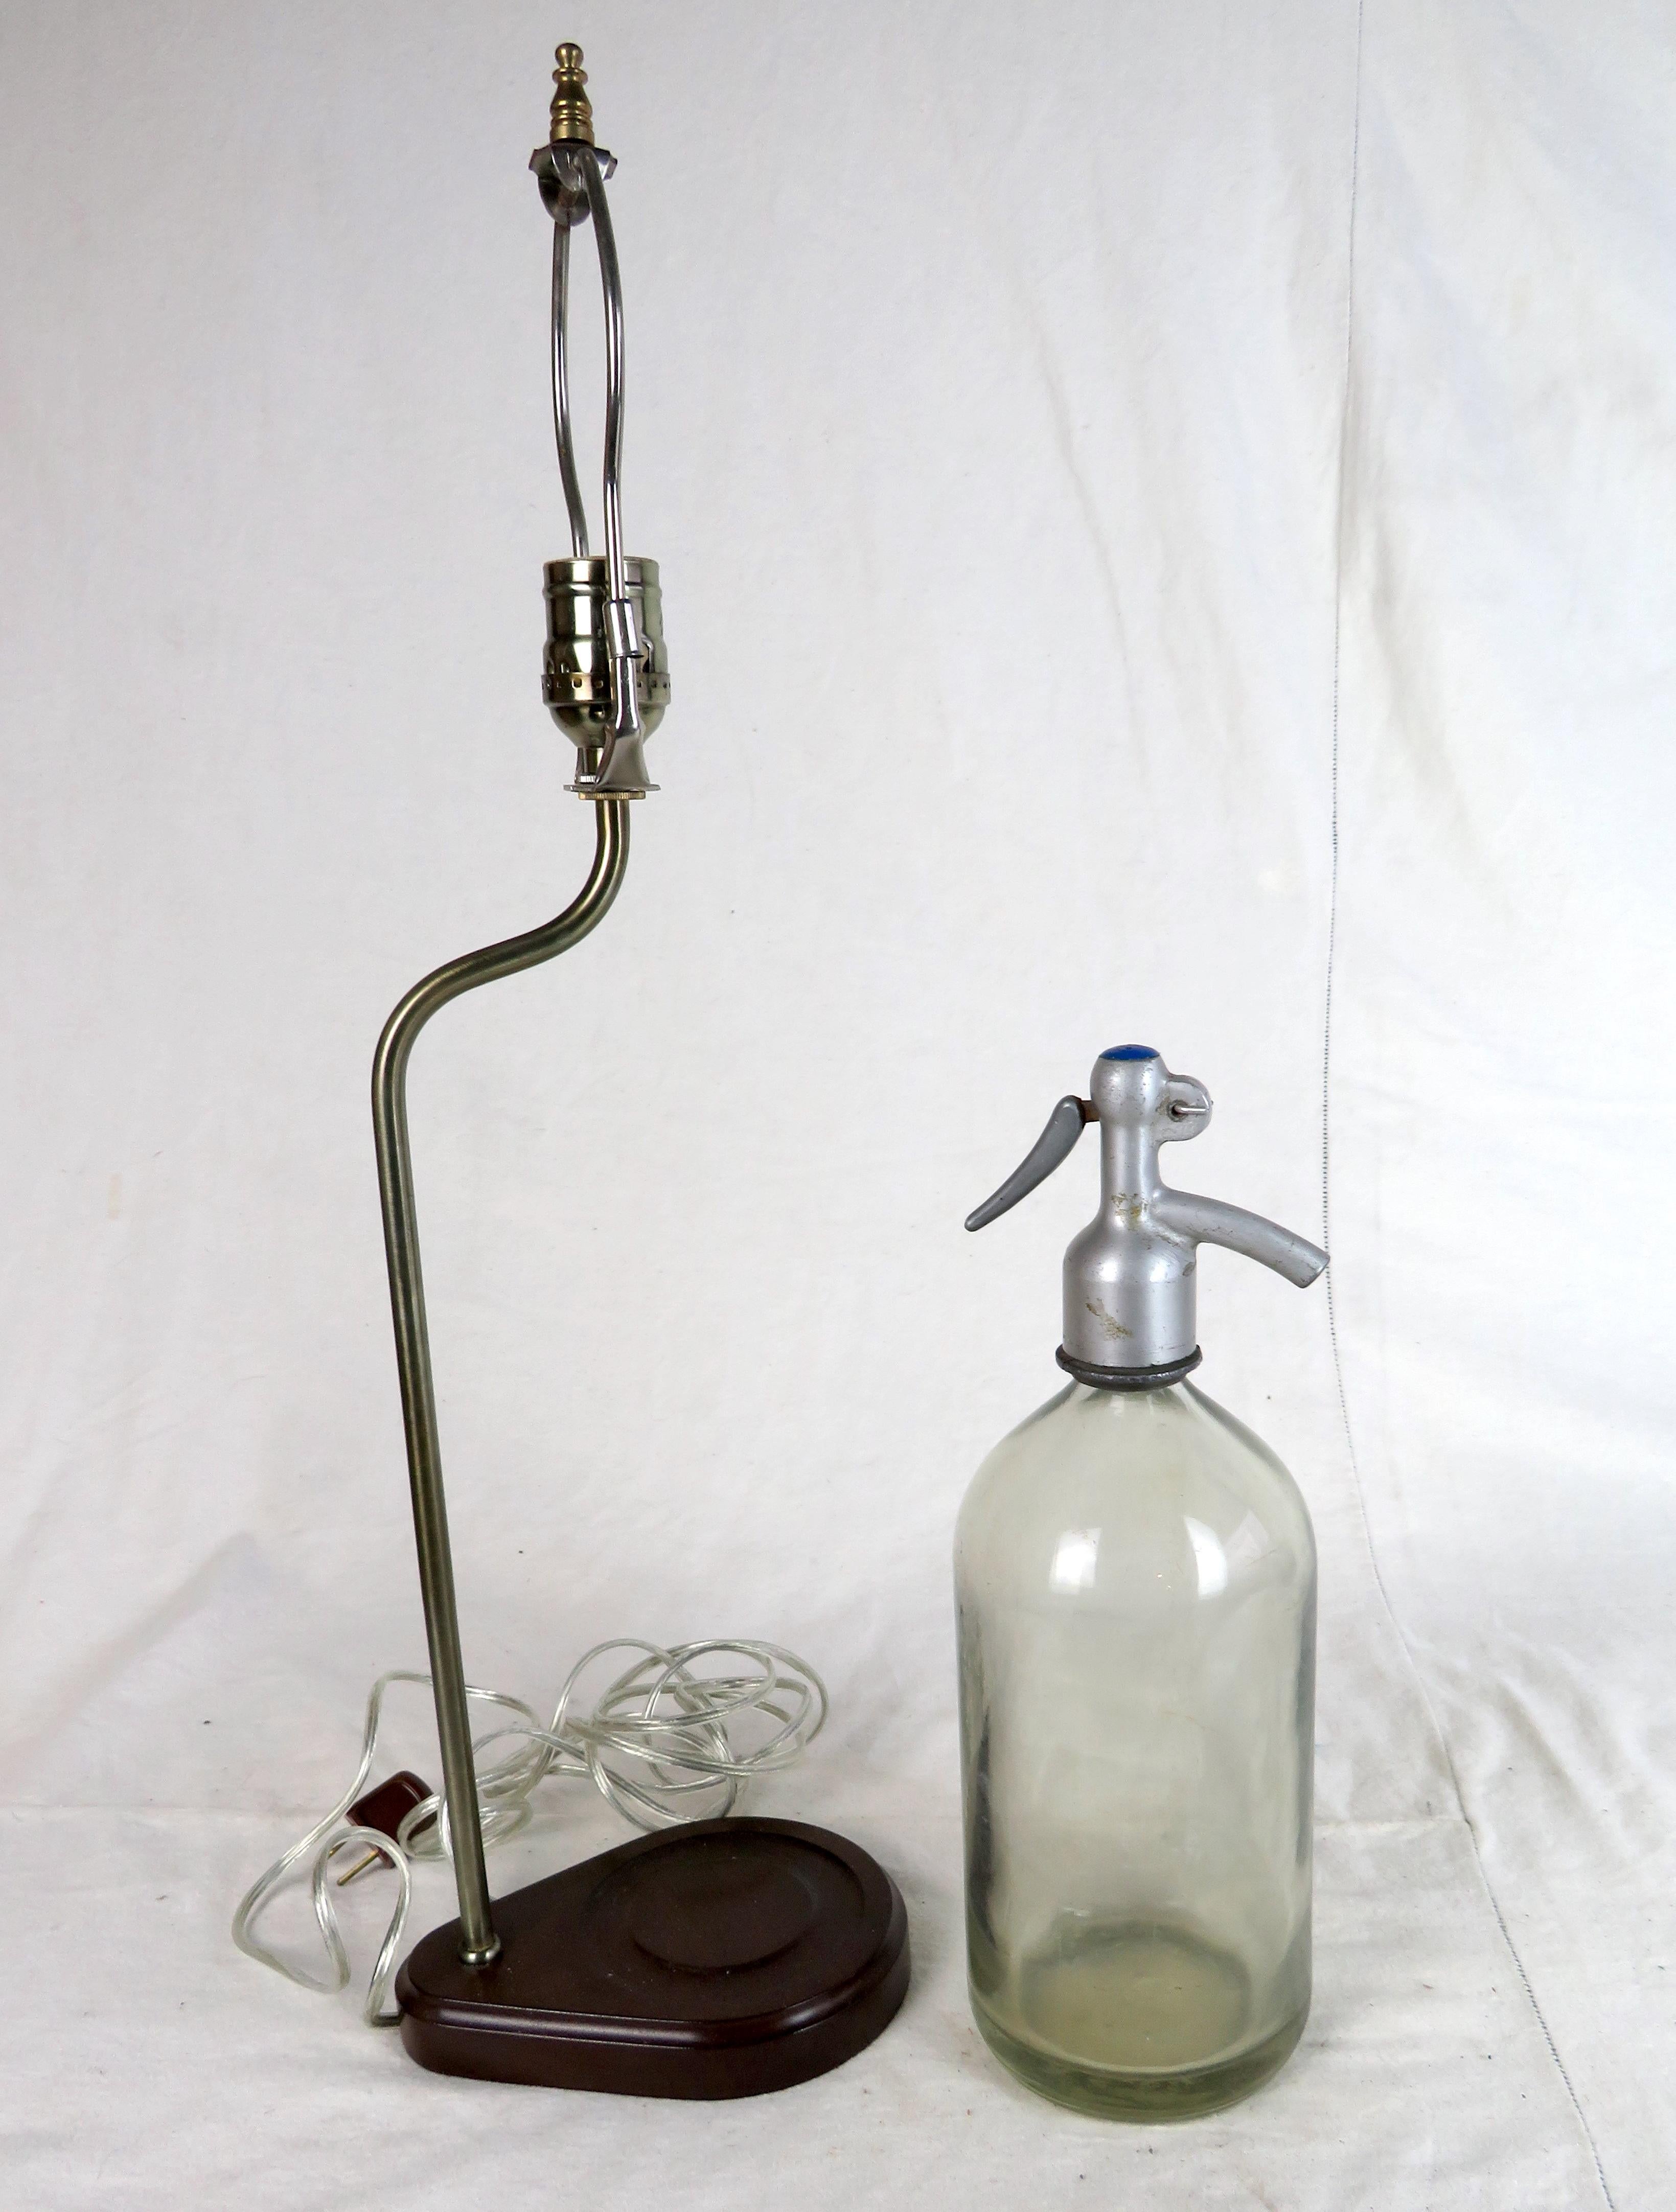 Vintage grüne Glas-Seltzer-Flasche in eine Lampe umgewandelt. Steht auf einem speziell angefertigten Holzsockel mit Lampenarm und dazugehörigem Schirm. Eine großartige Ergänzung für jede Hausbar.